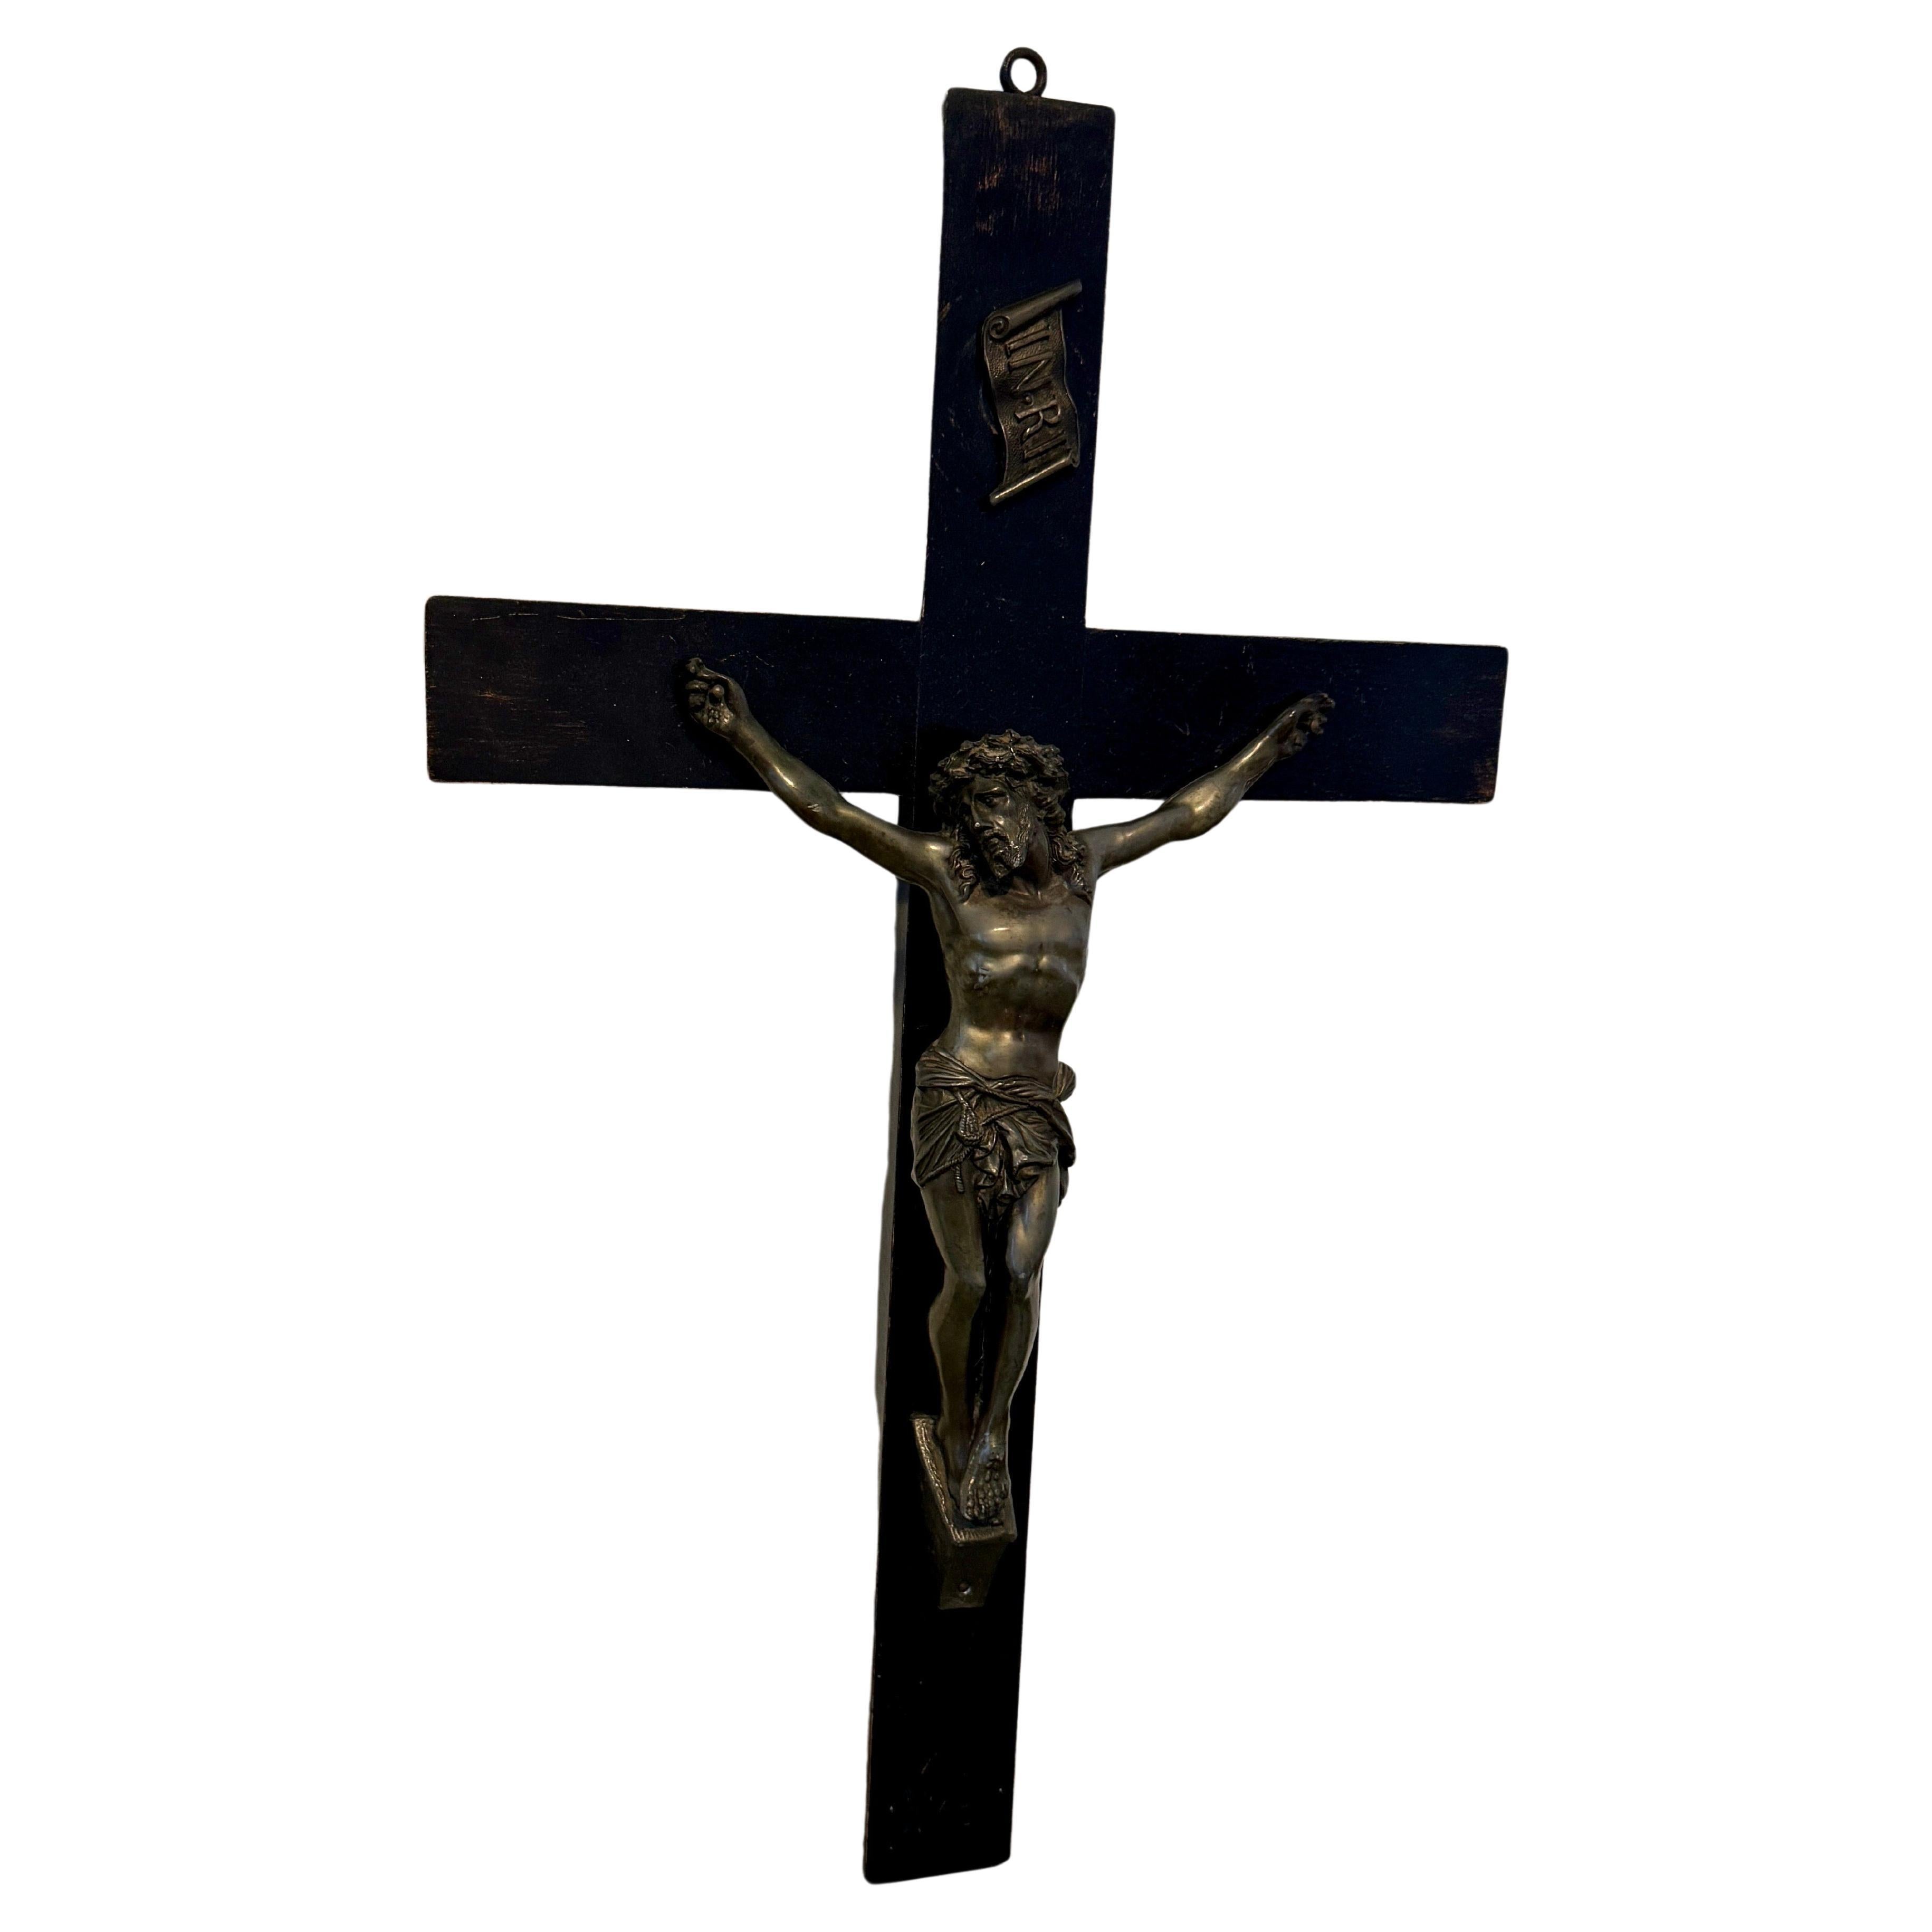 Jesus aus Bronze auf geschnitztem Holzkruzifix, Anfang 1900er Jahre 
Dieses hölzerne Kruzifix wäre sicherlich eine wunderbare Ergänzung für jede Sammlung religiöser Kunstwerke.